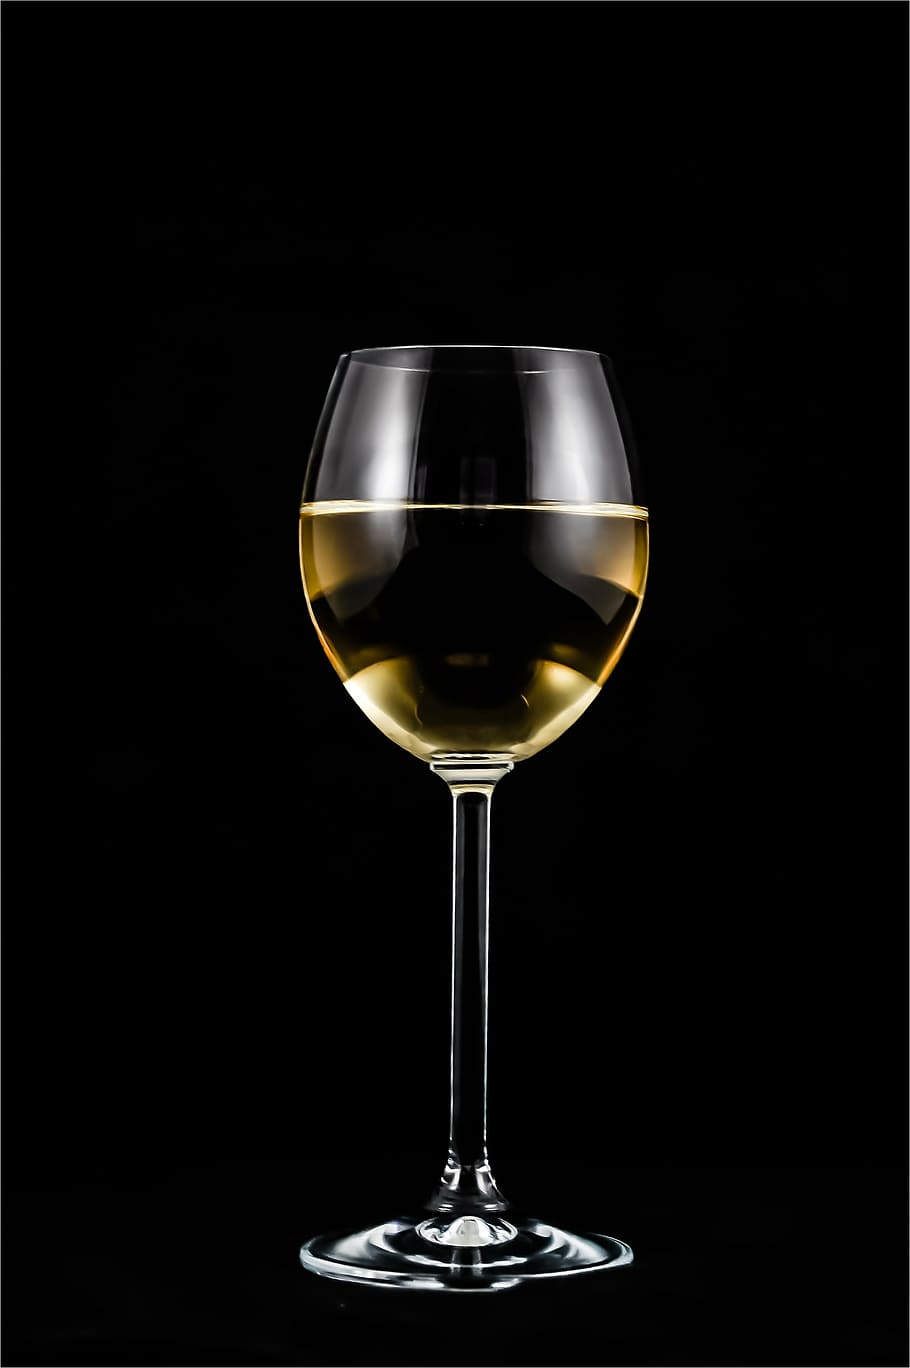 fotografia, vidro, branco, preto, plano de fundo, um copo de vinho, vinho, álcool, casamento, um copo de